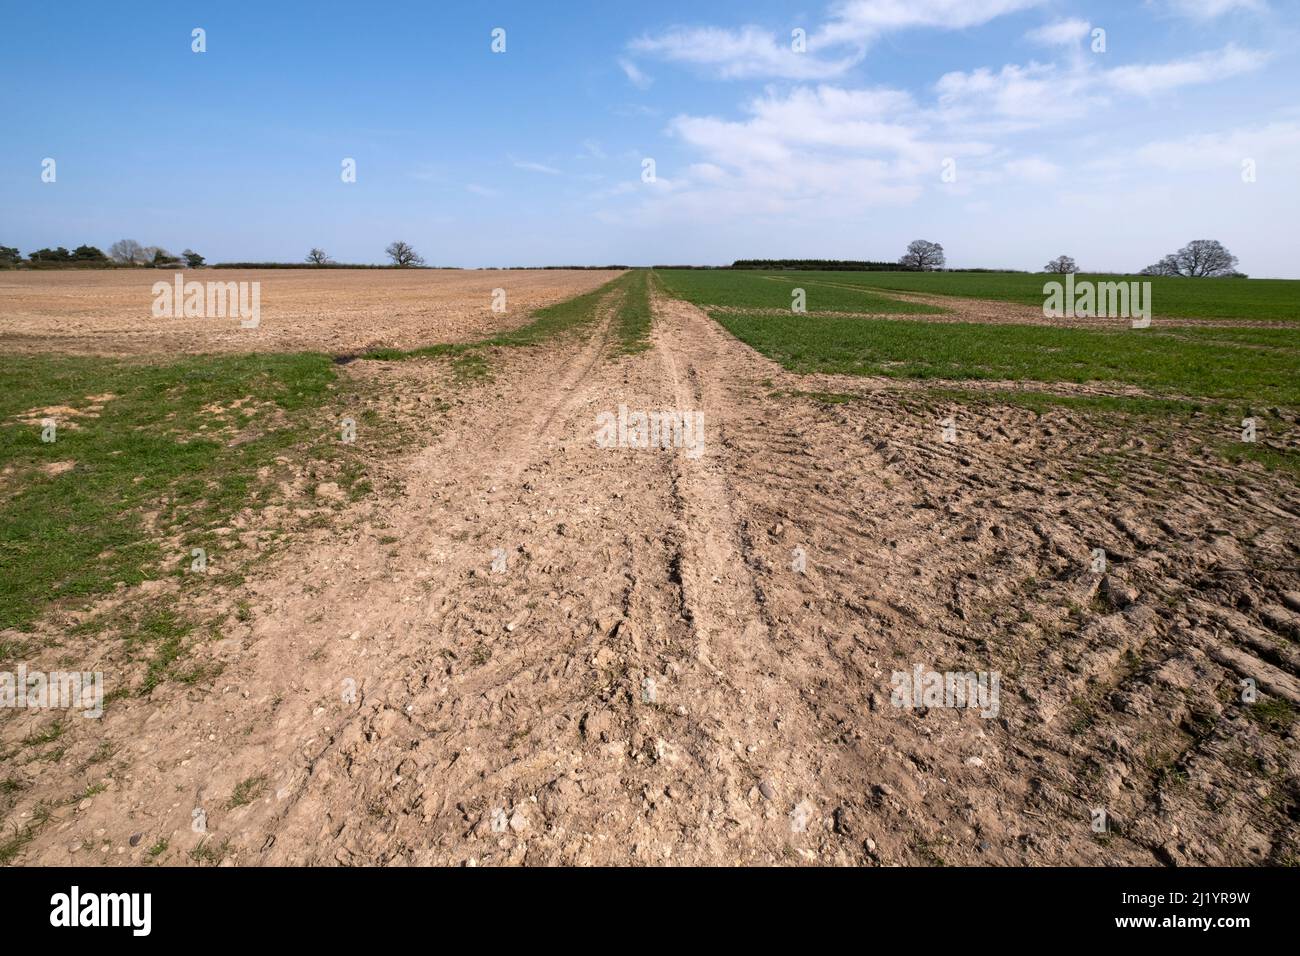 Des champs secs ont été séchés le long d'une récolte de printemps sur une ferme dans la campagne du Warwickshire après une période de temps sec. Banque D'Images